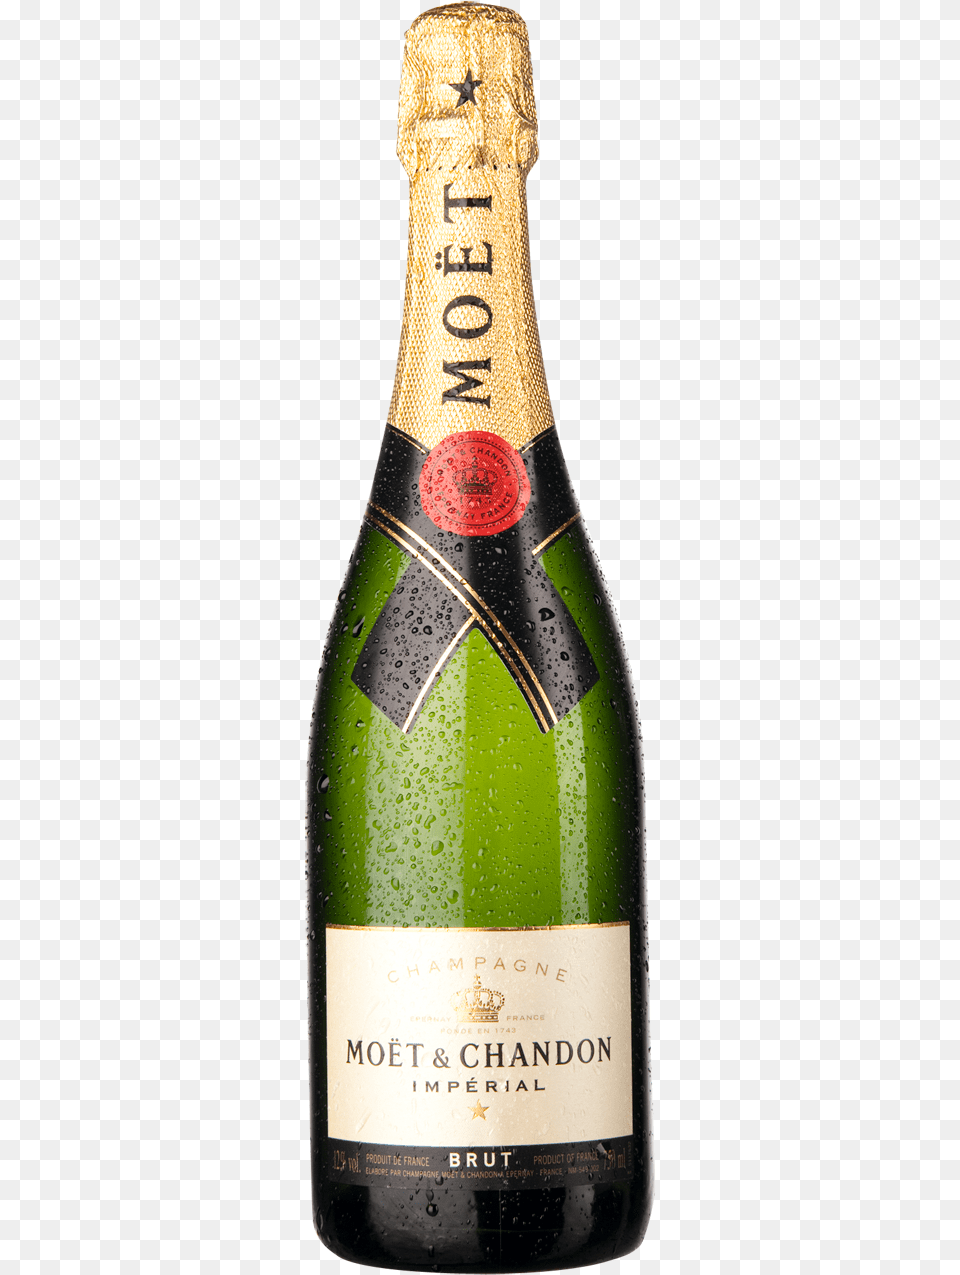 Mot Amp Chandon Imprial Champagne 2 Bottles France Expensive Wines In Kenya, Alcohol, Beer, Beverage, Bottle Free Png Download